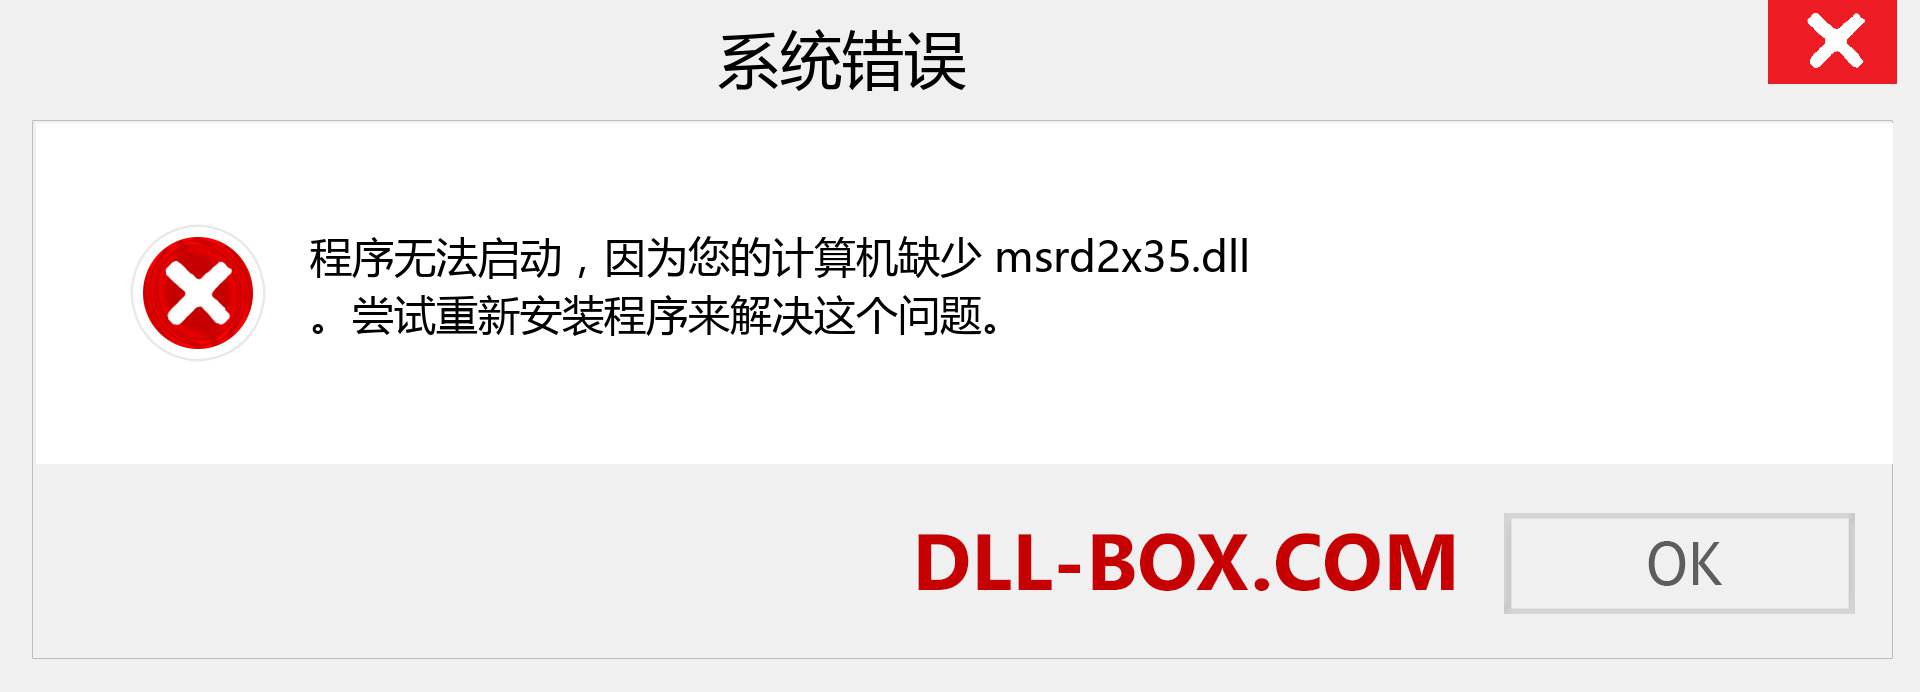 msrd2x35.dll 文件丢失？。 适用于 Windows 7、8、10 的下载 - 修复 Windows、照片、图像上的 msrd2x35 dll 丢失错误